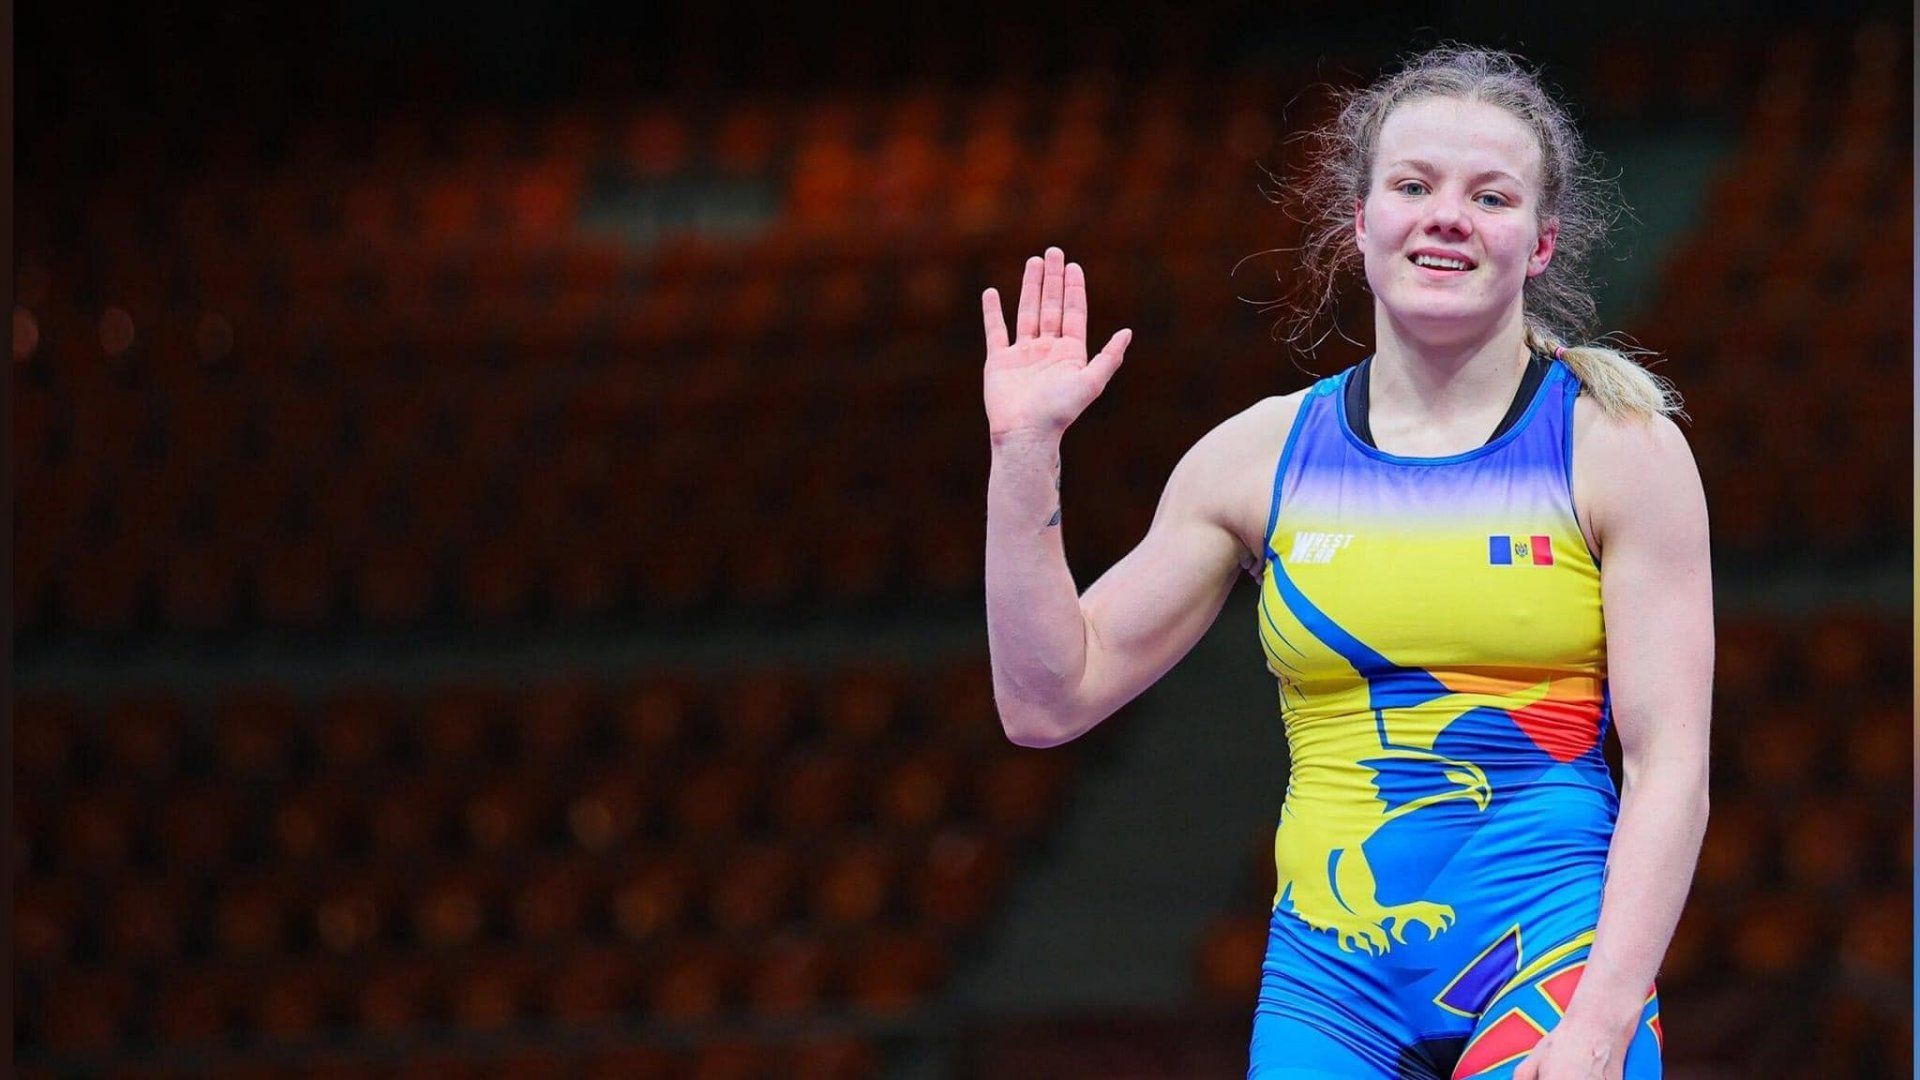 Luptătoarea Mariana Draguțan a obținut bronzul în cadrul Campionatului European Under 23